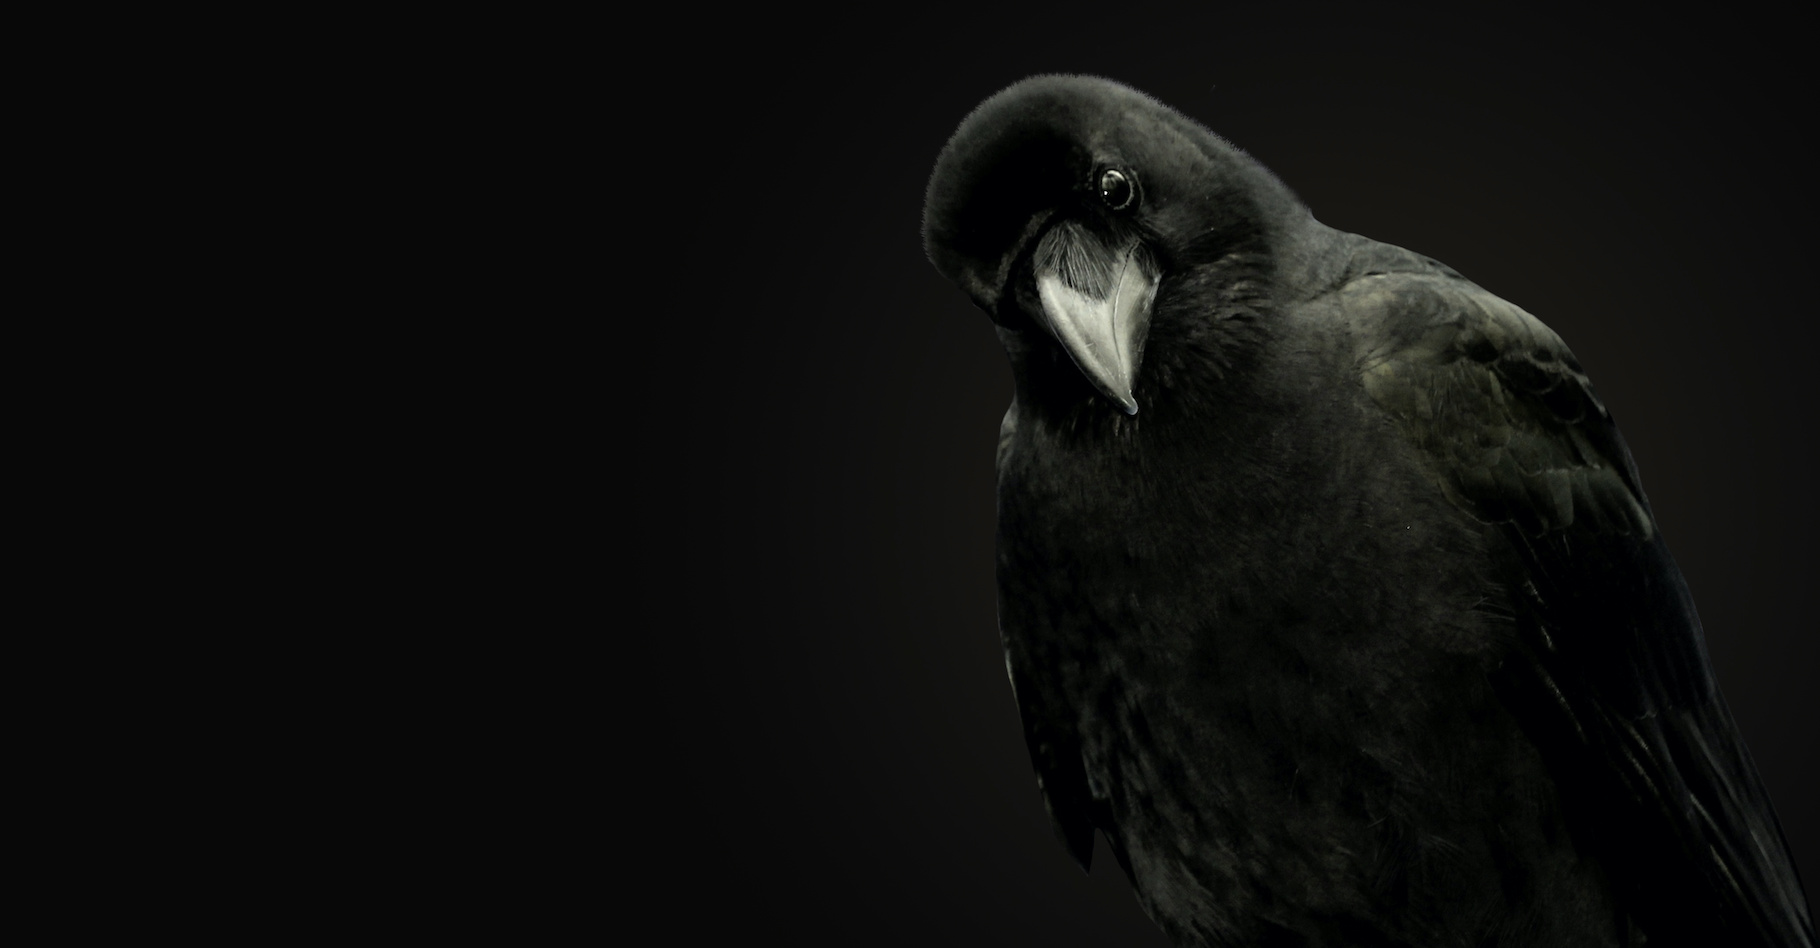 Le corbeau est un oiseau étonnant. Il a de la mémoire. Il a conscience de lui-même. Il sait utiliser — et même fabriquer — des outils. Il est joueur et empathique. Et tout ça serait rendu possible par la présence dans son cerveau d’un nombre important d’interneurones. De quoi assurer au corbeau de ne jamais être vraiment bête ! © Photoeuro, Adobe Stock